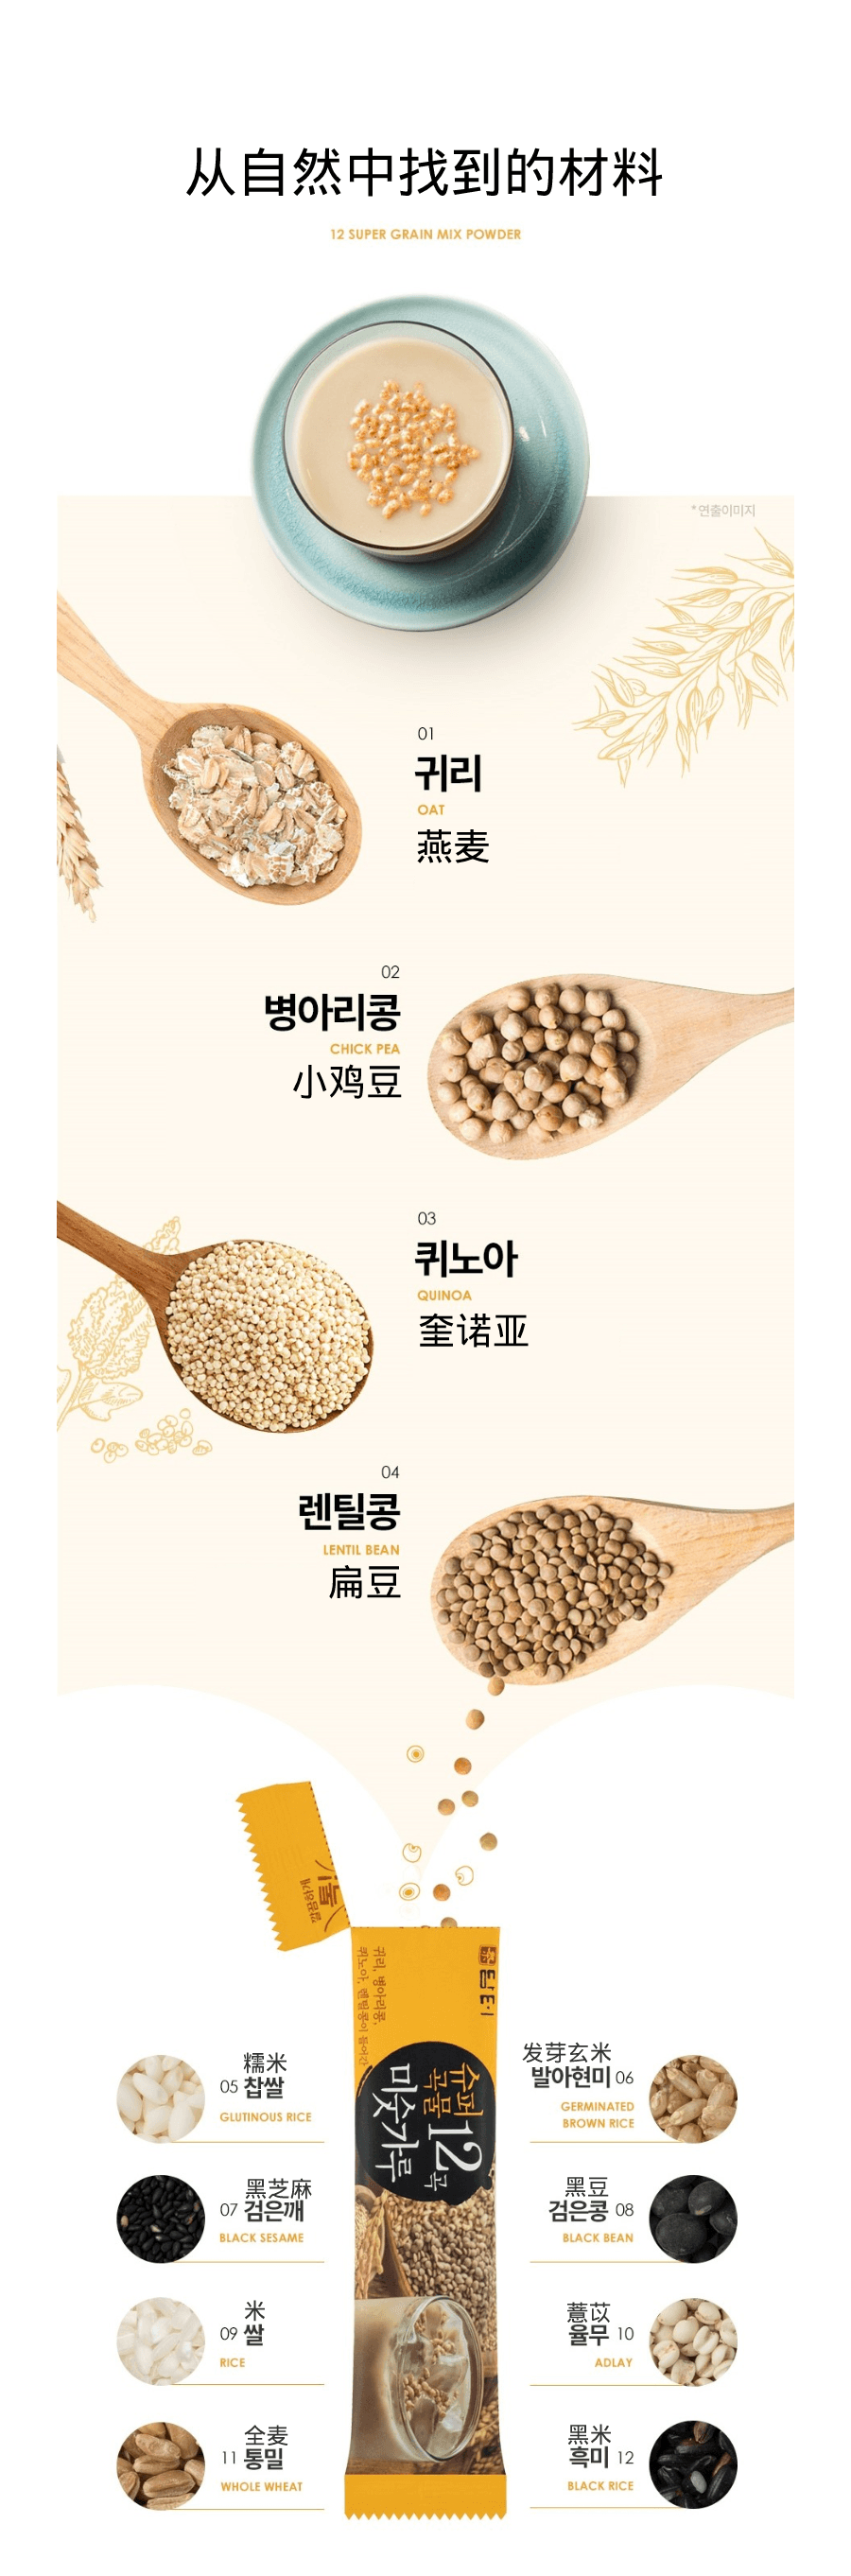 韓國DAMTUH丹特 12粒超級五穀雜粉 40條入 800g 2 包